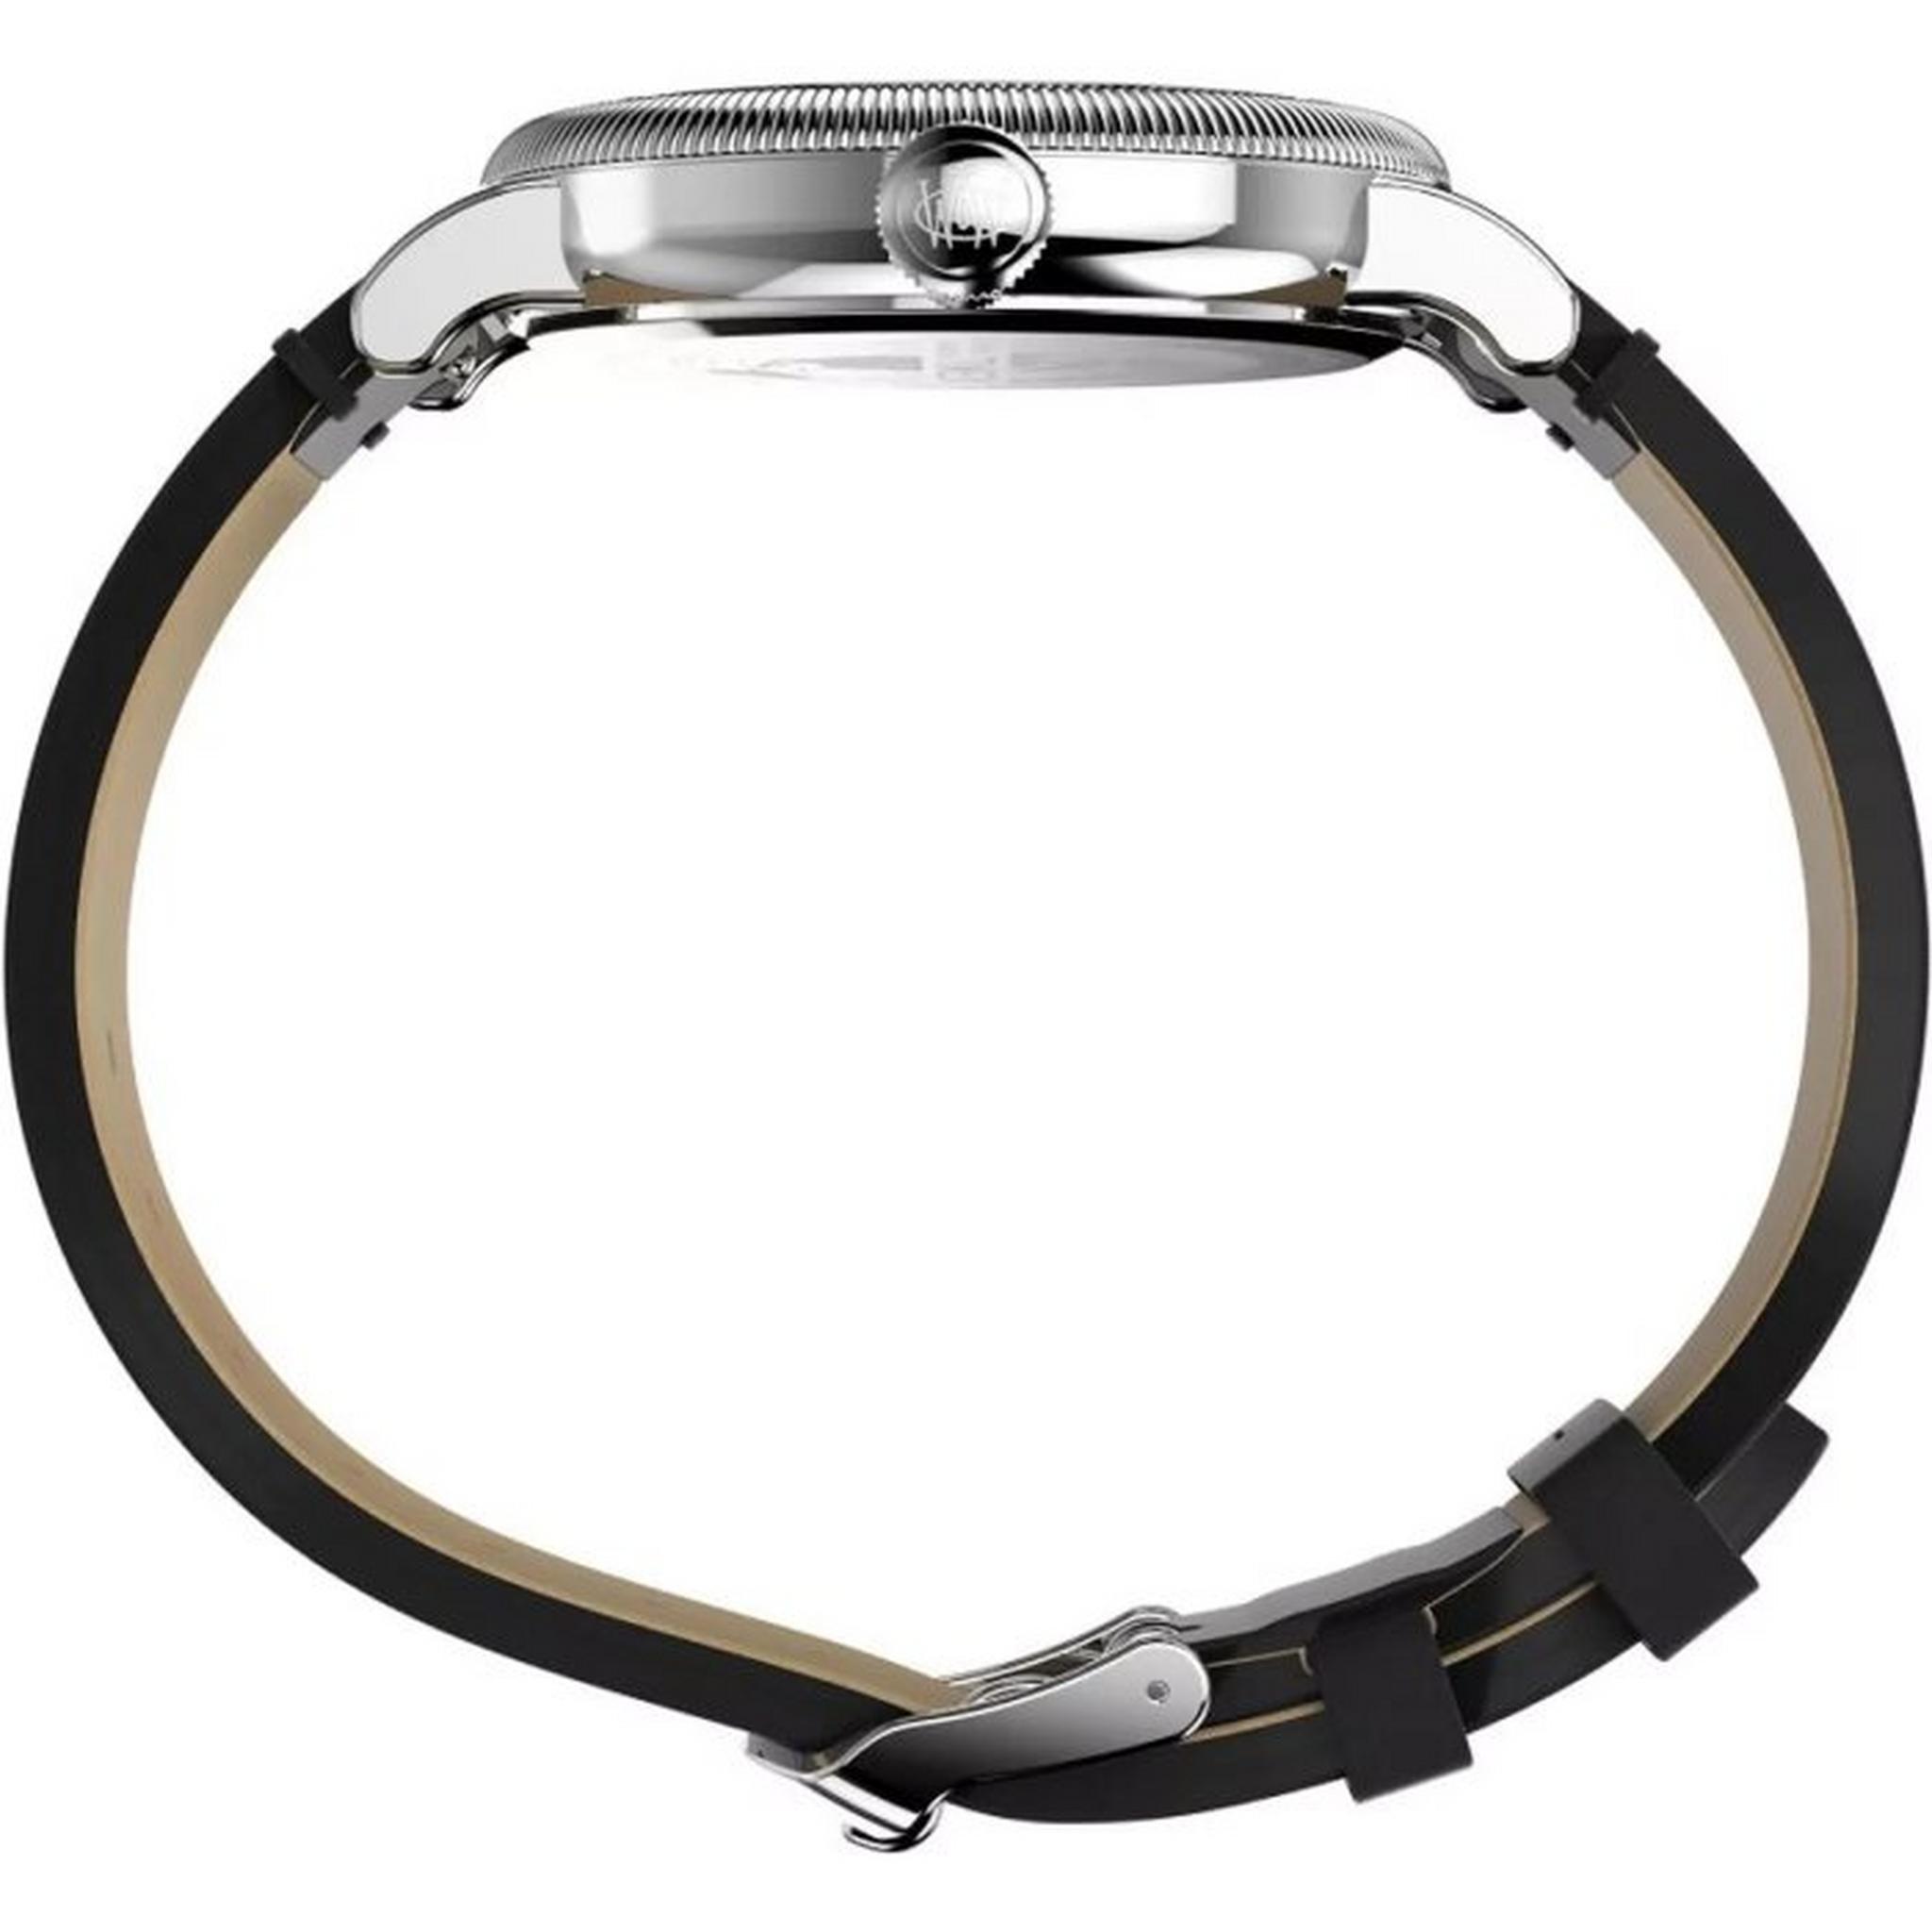 ساعة واتربري للرجال من تايمكس، انالوج، 40 ملم، حزام جلد، TW2W20200VM – أسود